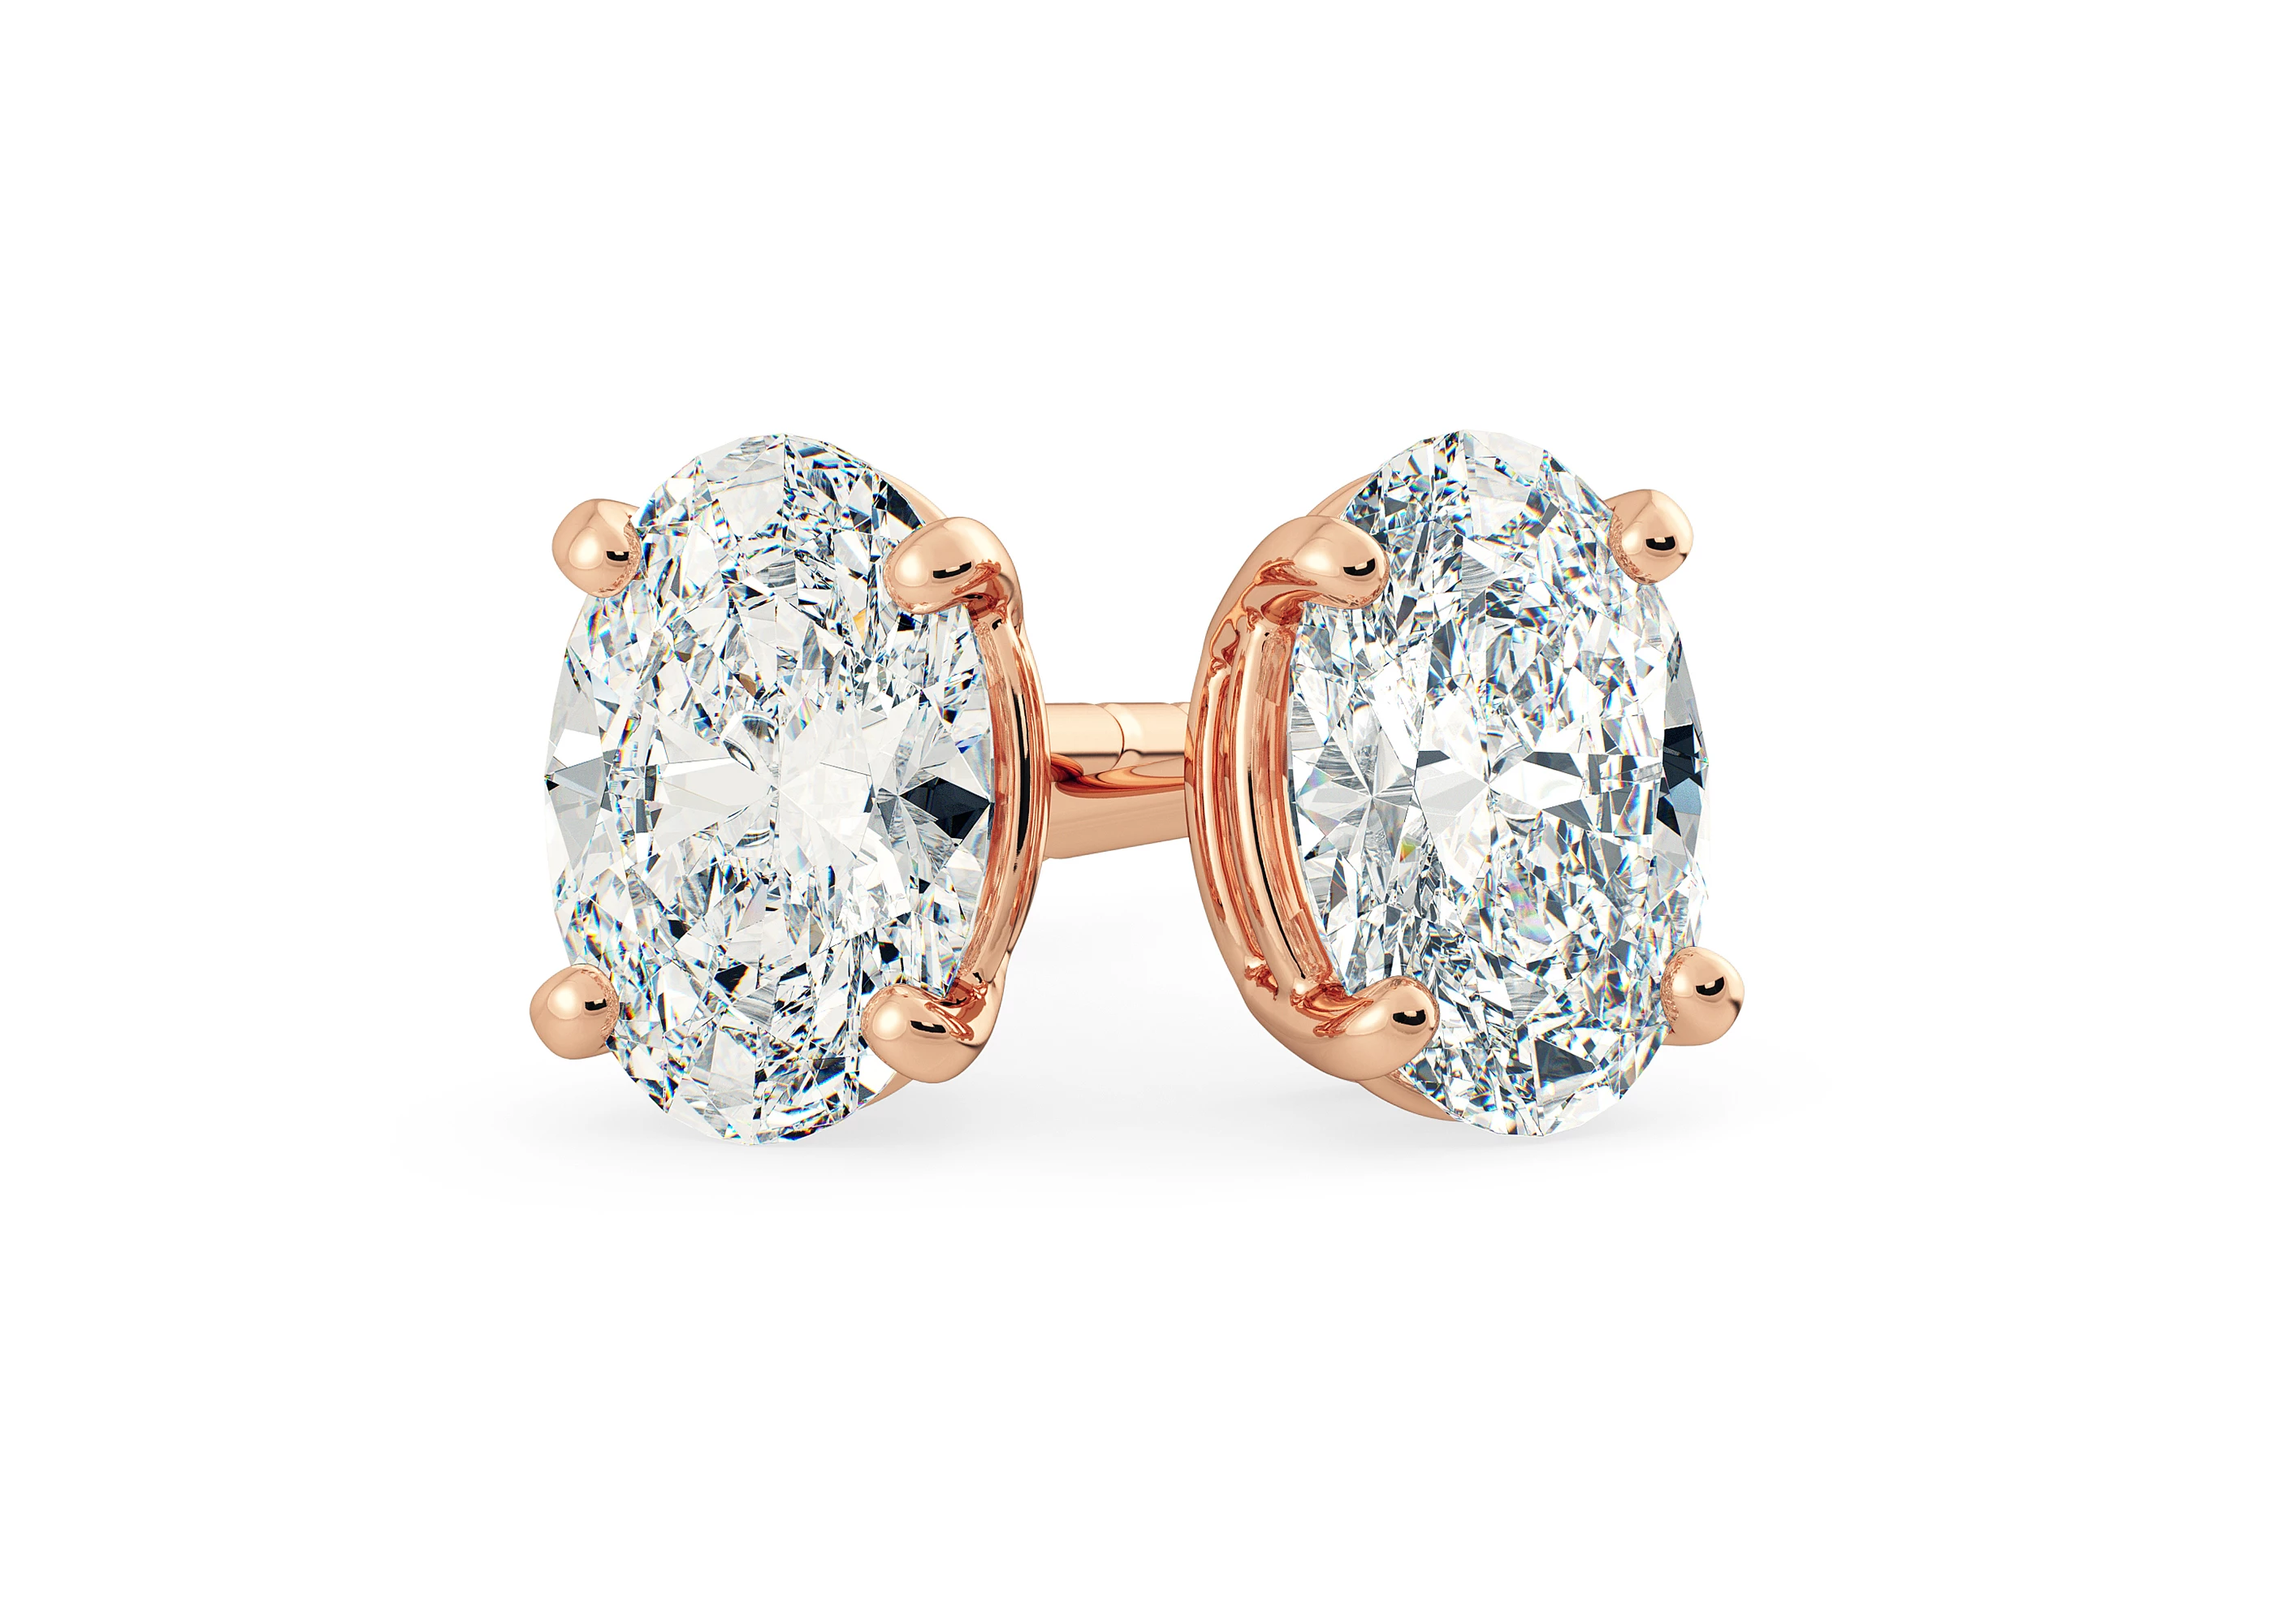 One Carat Oval Diamond Stud Earrings in 18K Rose Gold